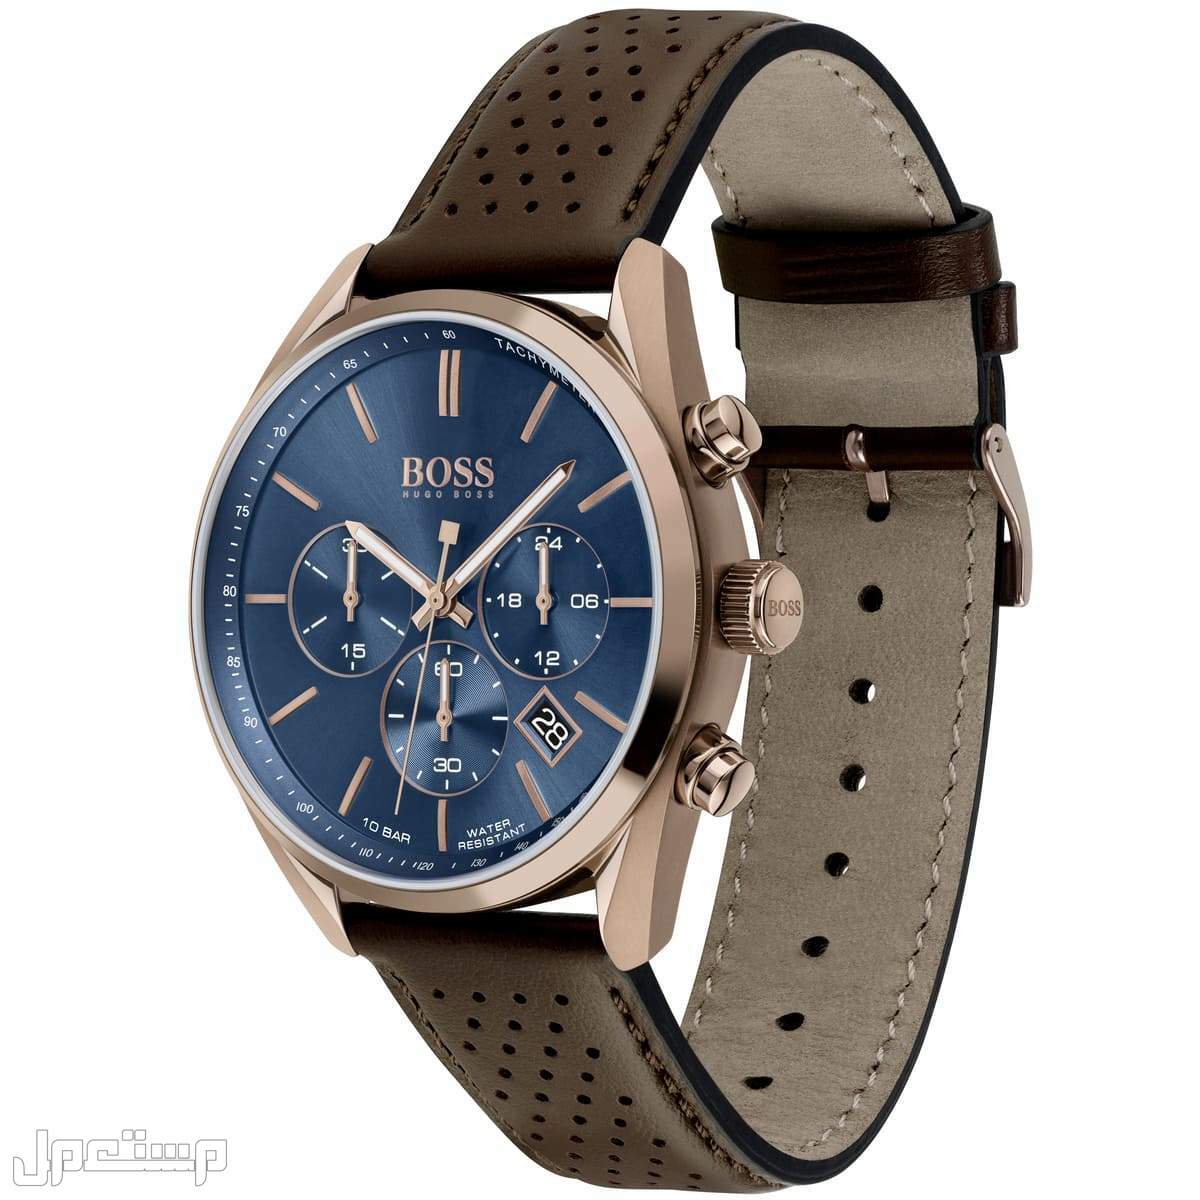 أفضل ساعات بوس Boss الأكثر مبيعا هذا العام وأسعارها في قطر ساع 1513817-hugo-boss-watch-men-blue-dial-leather-brown-strap-quartz-analog-chro